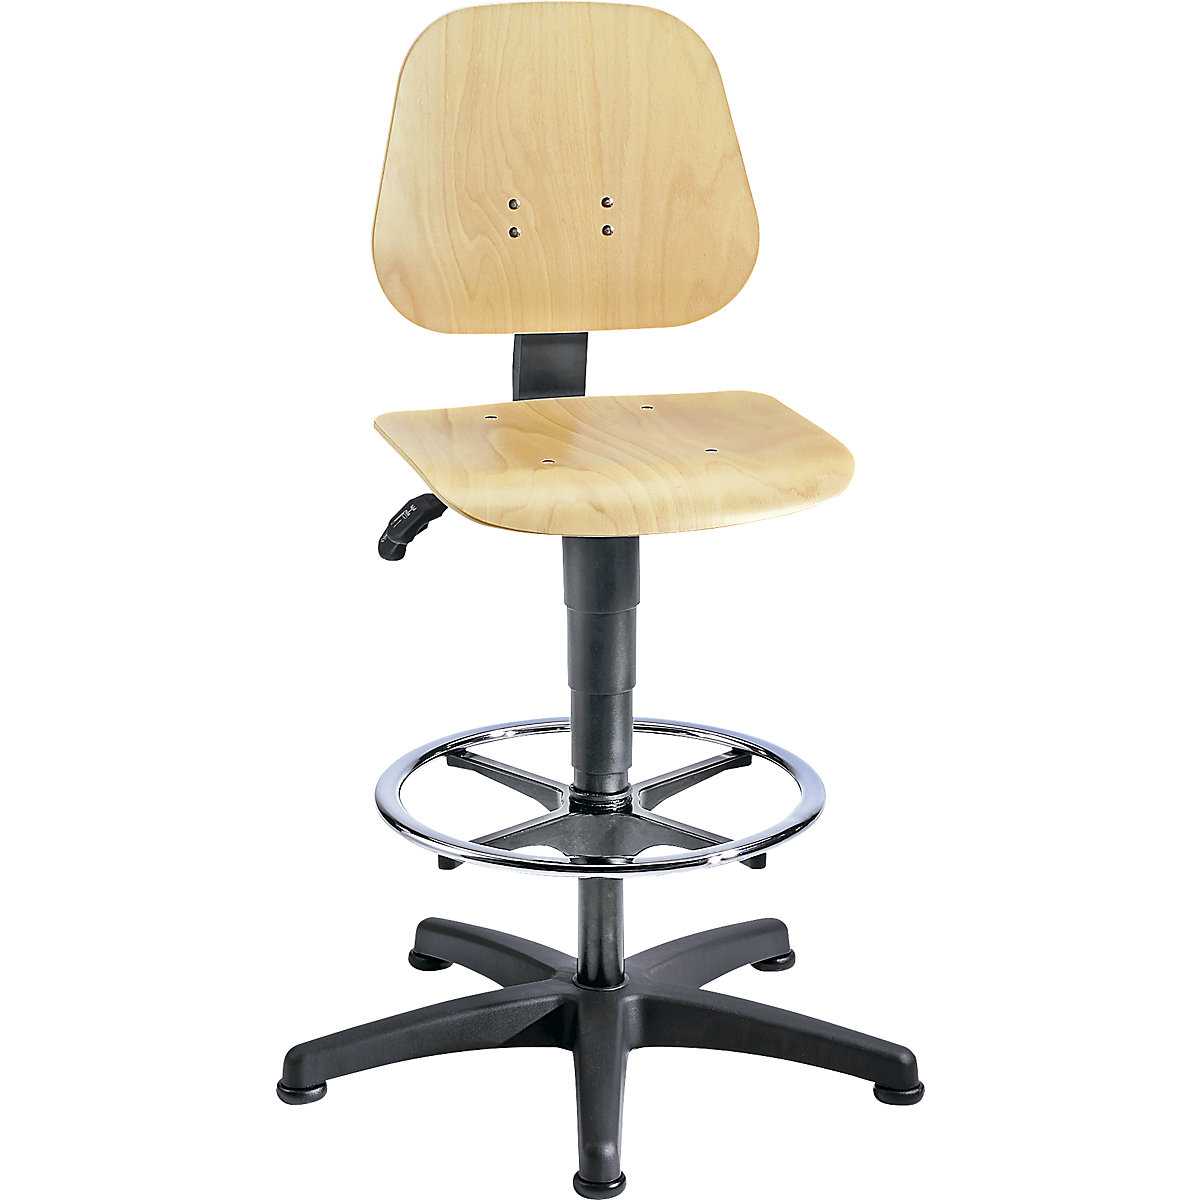 Okretni radni stolac – bimos, s namještanjem visine pomoću plinske opruge, slojevito drvo bukve, s podnim vodilicama i nožnim obručem-10